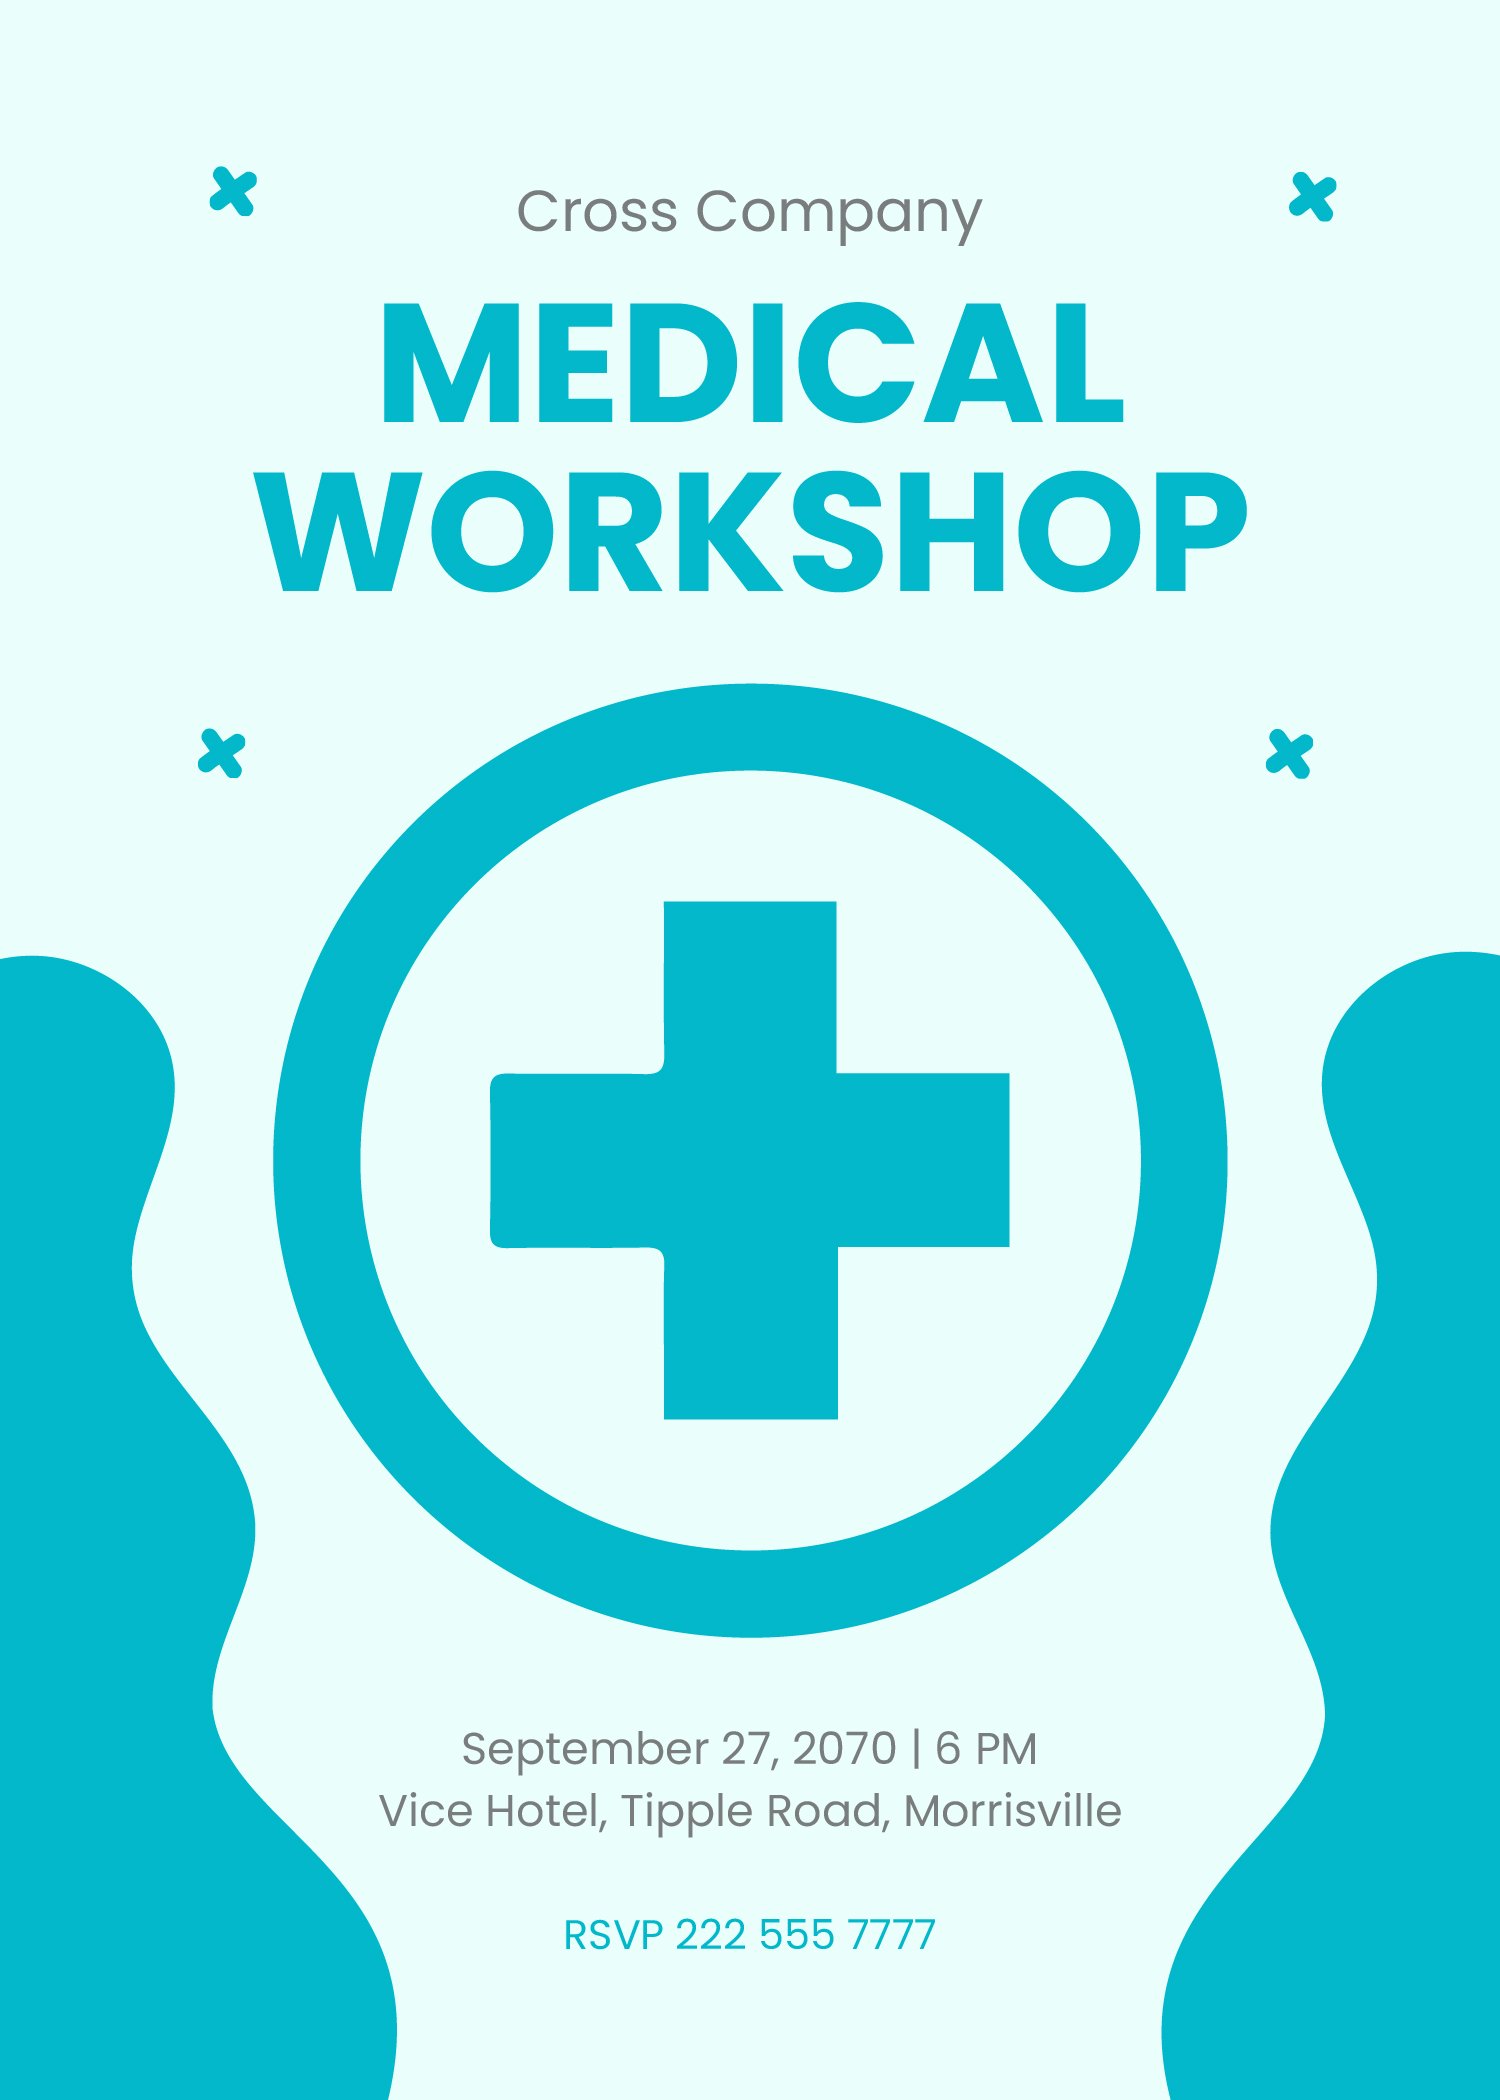 Medical Workshop Invitation Template